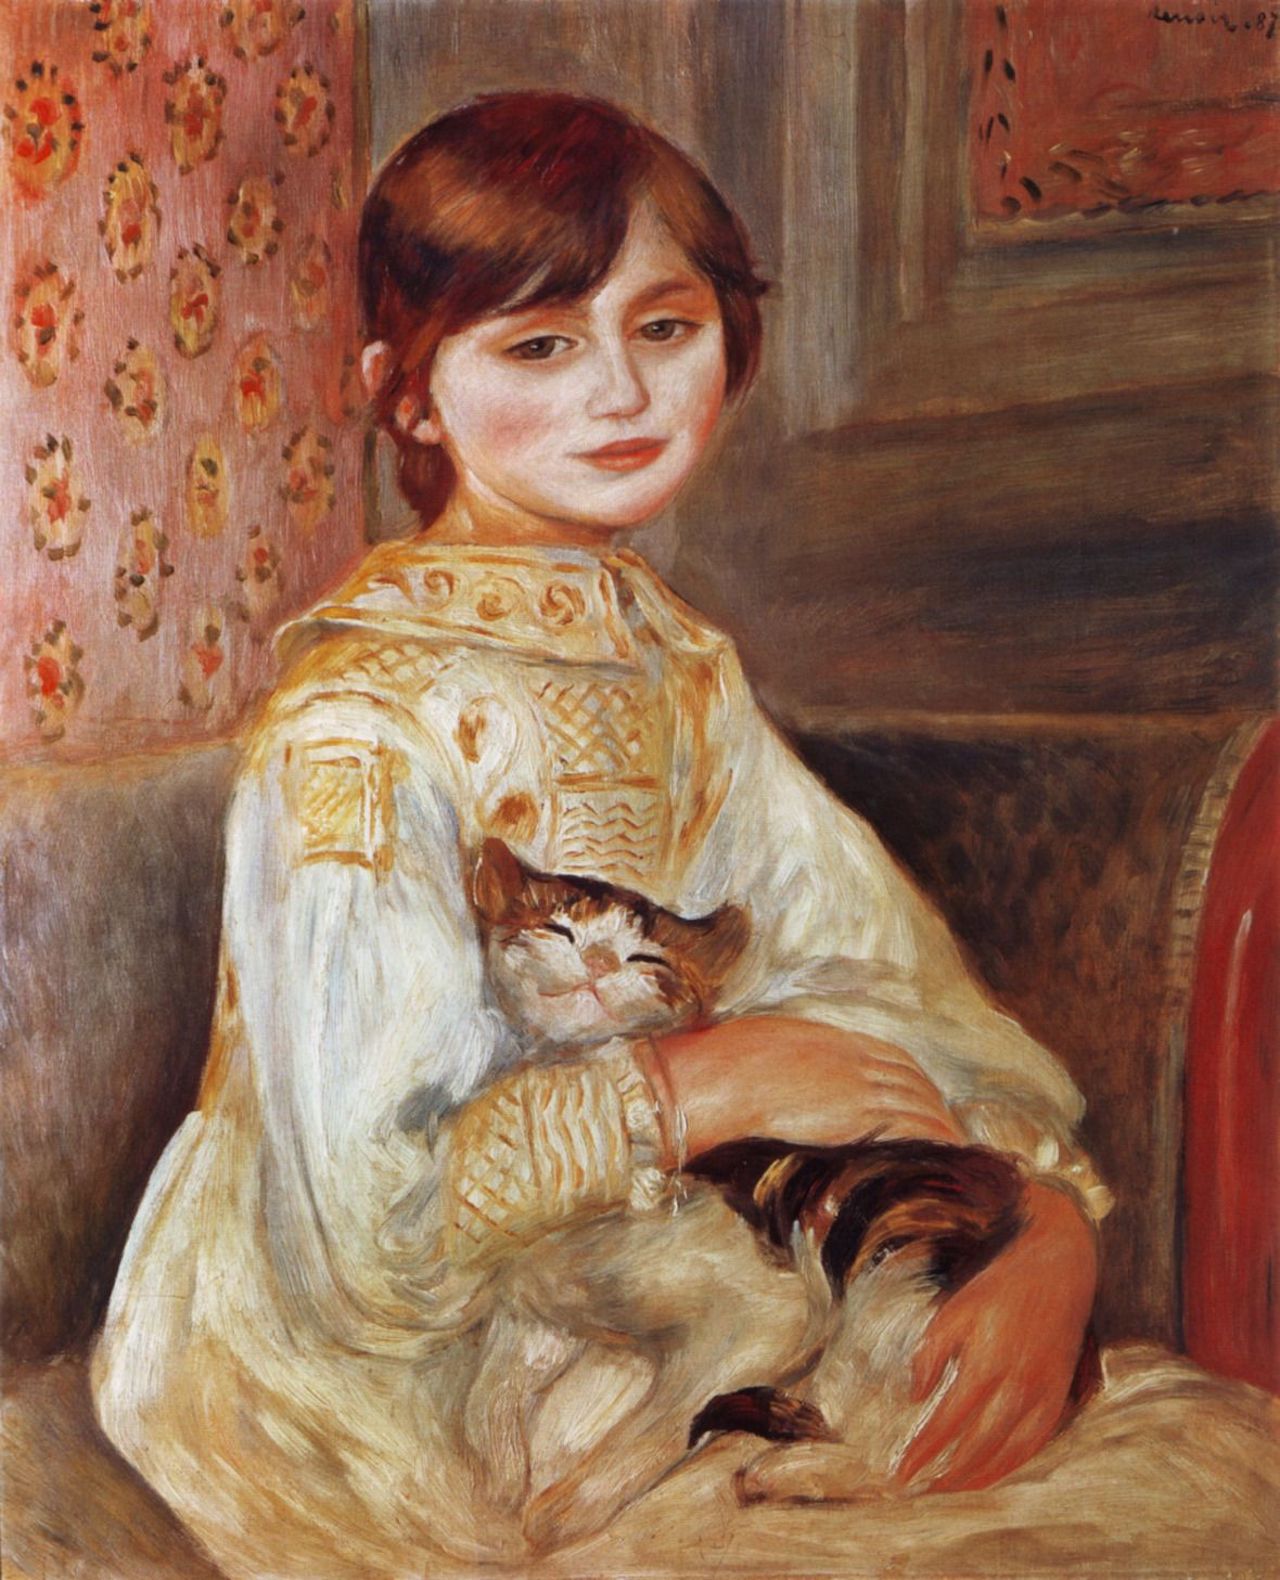 Enfin avec un Chat by Pierre-Auguste Renoir - 1887 - 54 x 65 cm Musée d'Orsay